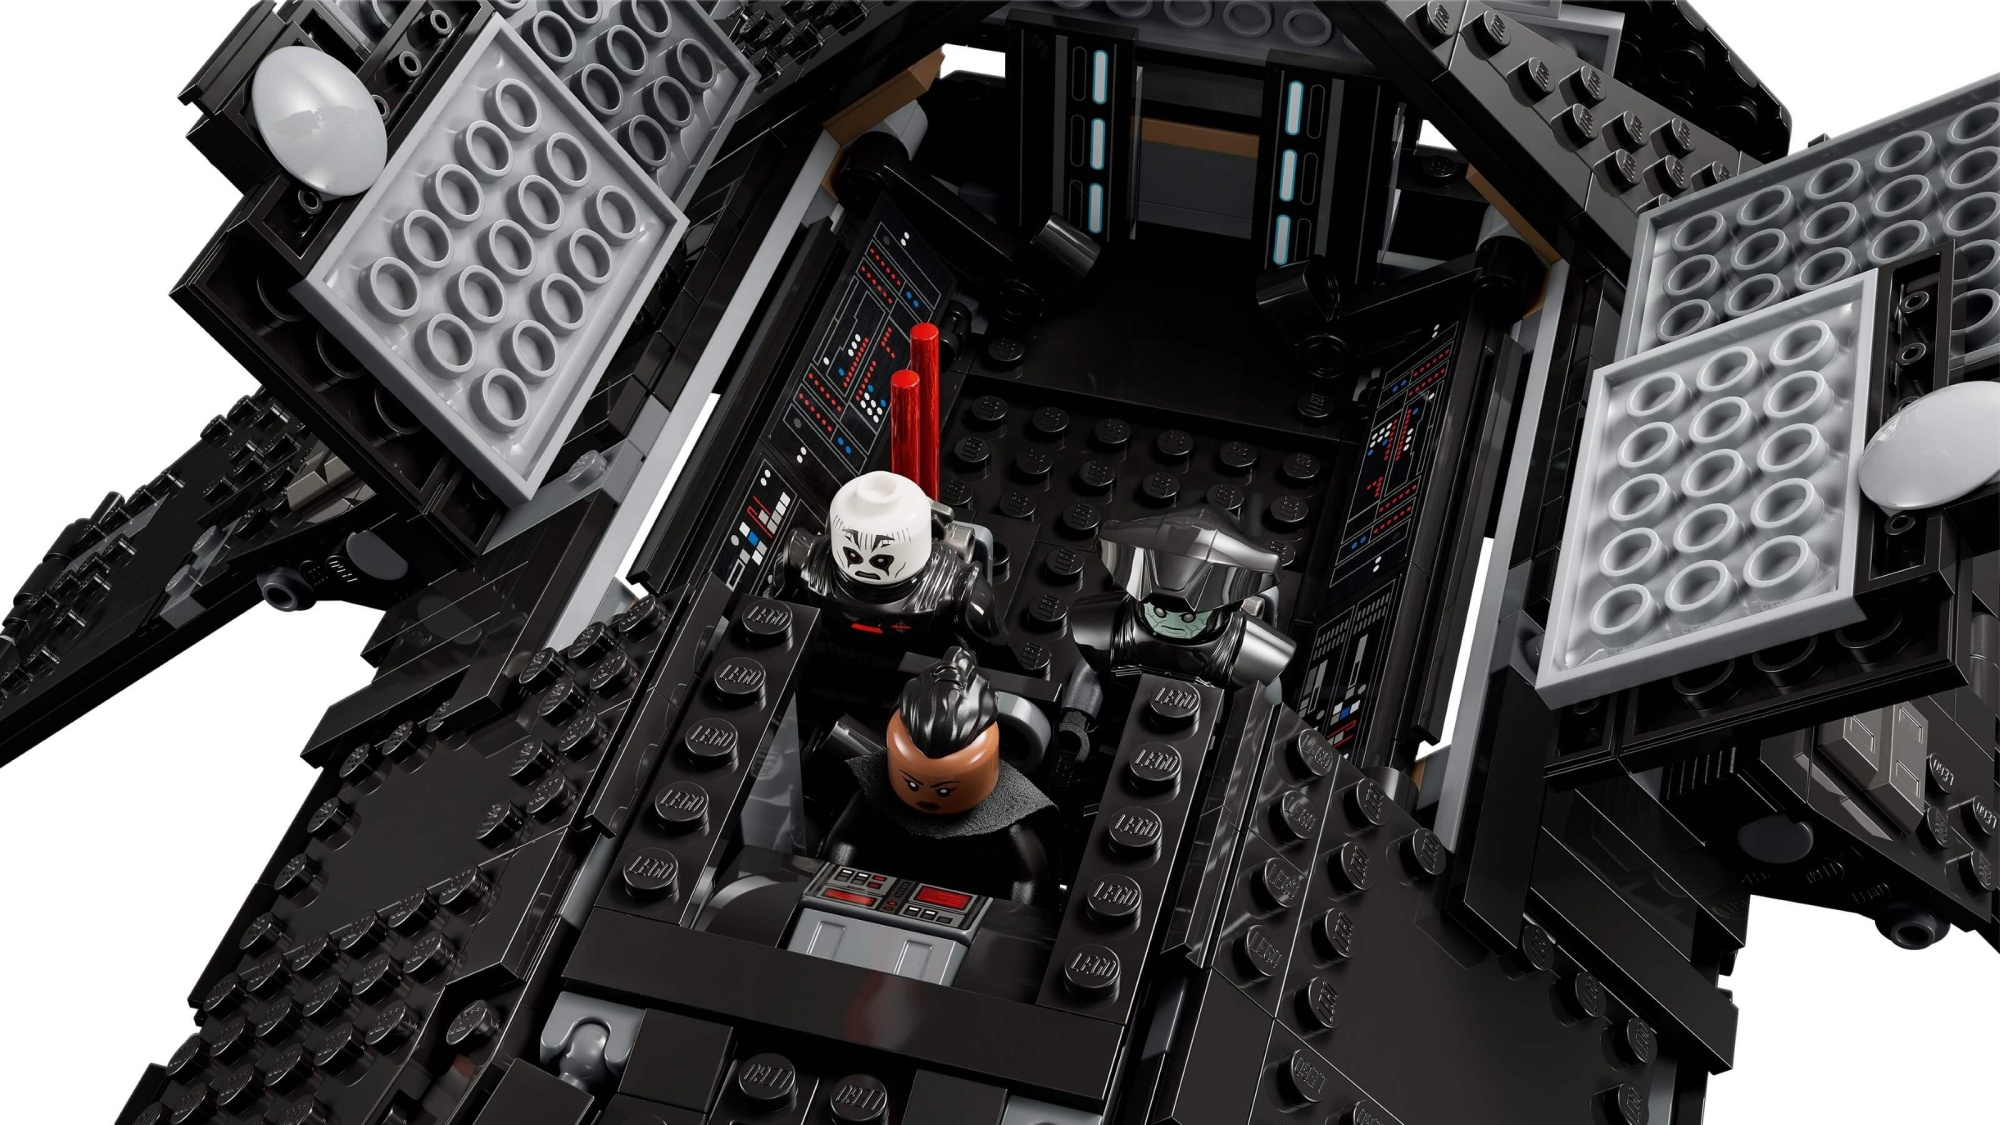 Конструктор LEGO Star Wars Транспортный корабль инквизиторов "Коса"